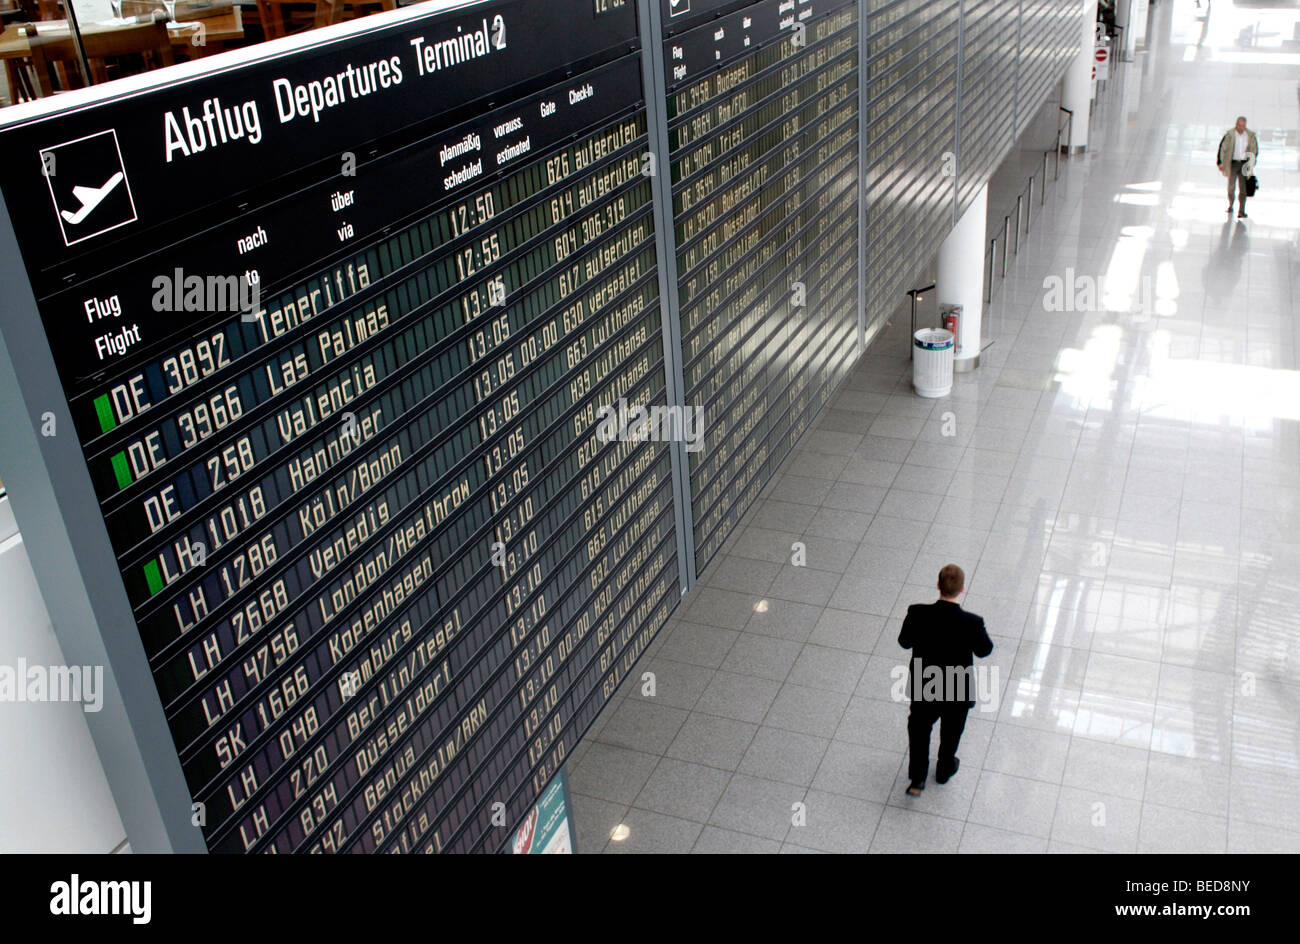 La commission liste d'information de départ au Terminal 2 de l'aéroport de Munich, l'aéroport Franz-Josef-Strauss de Munich, Bavaria, Germany, Banque D'Images